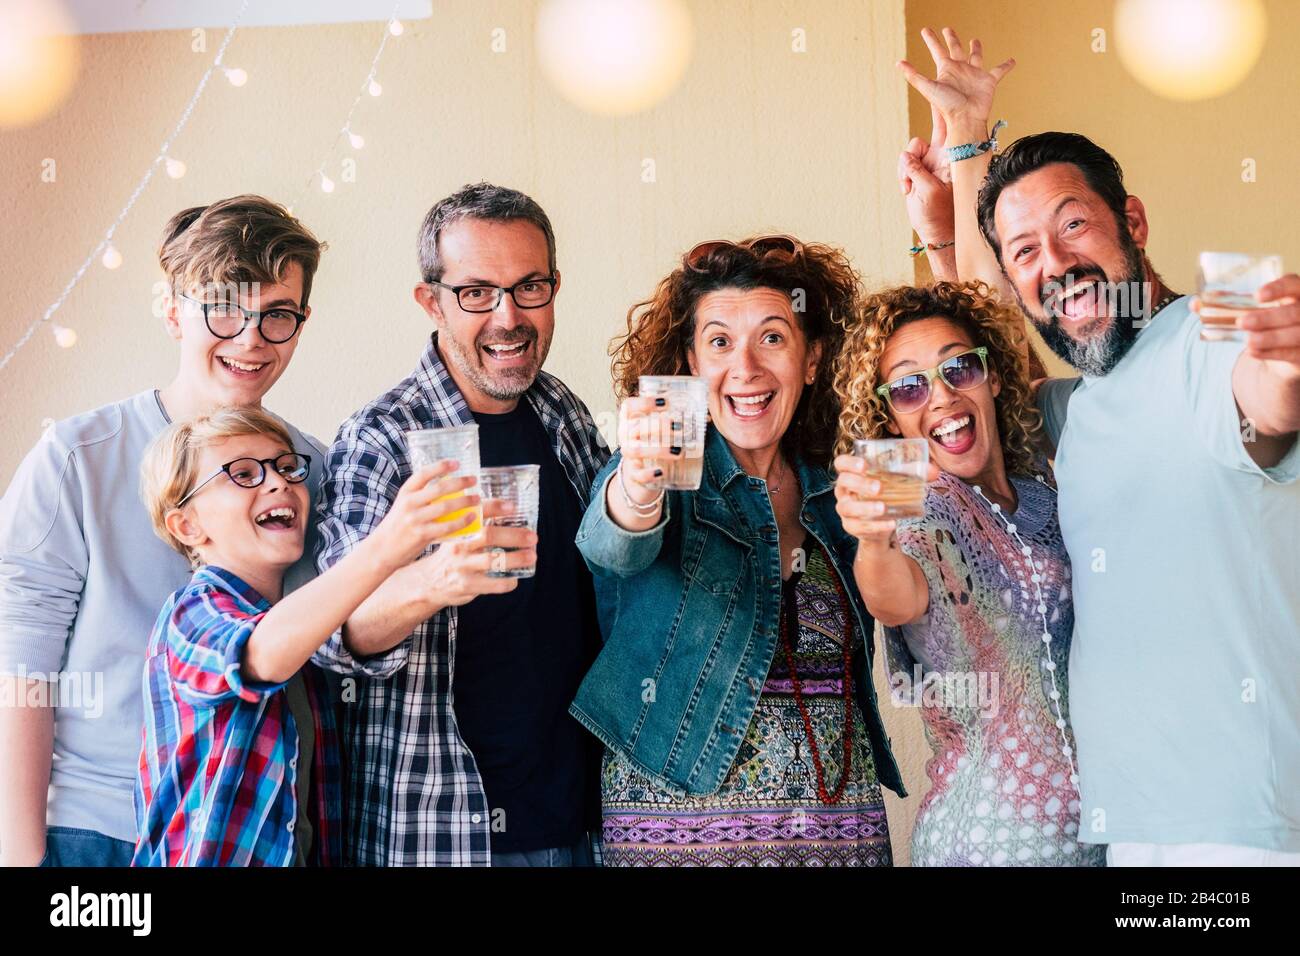 Gruppo di persone caucasiche uomini e donne di età diversa da bambini a adolescenti a adulti godere e celenrate insieme tostare con occhiali e avere un sacco di divertimento per l'amicizia Foto Stock